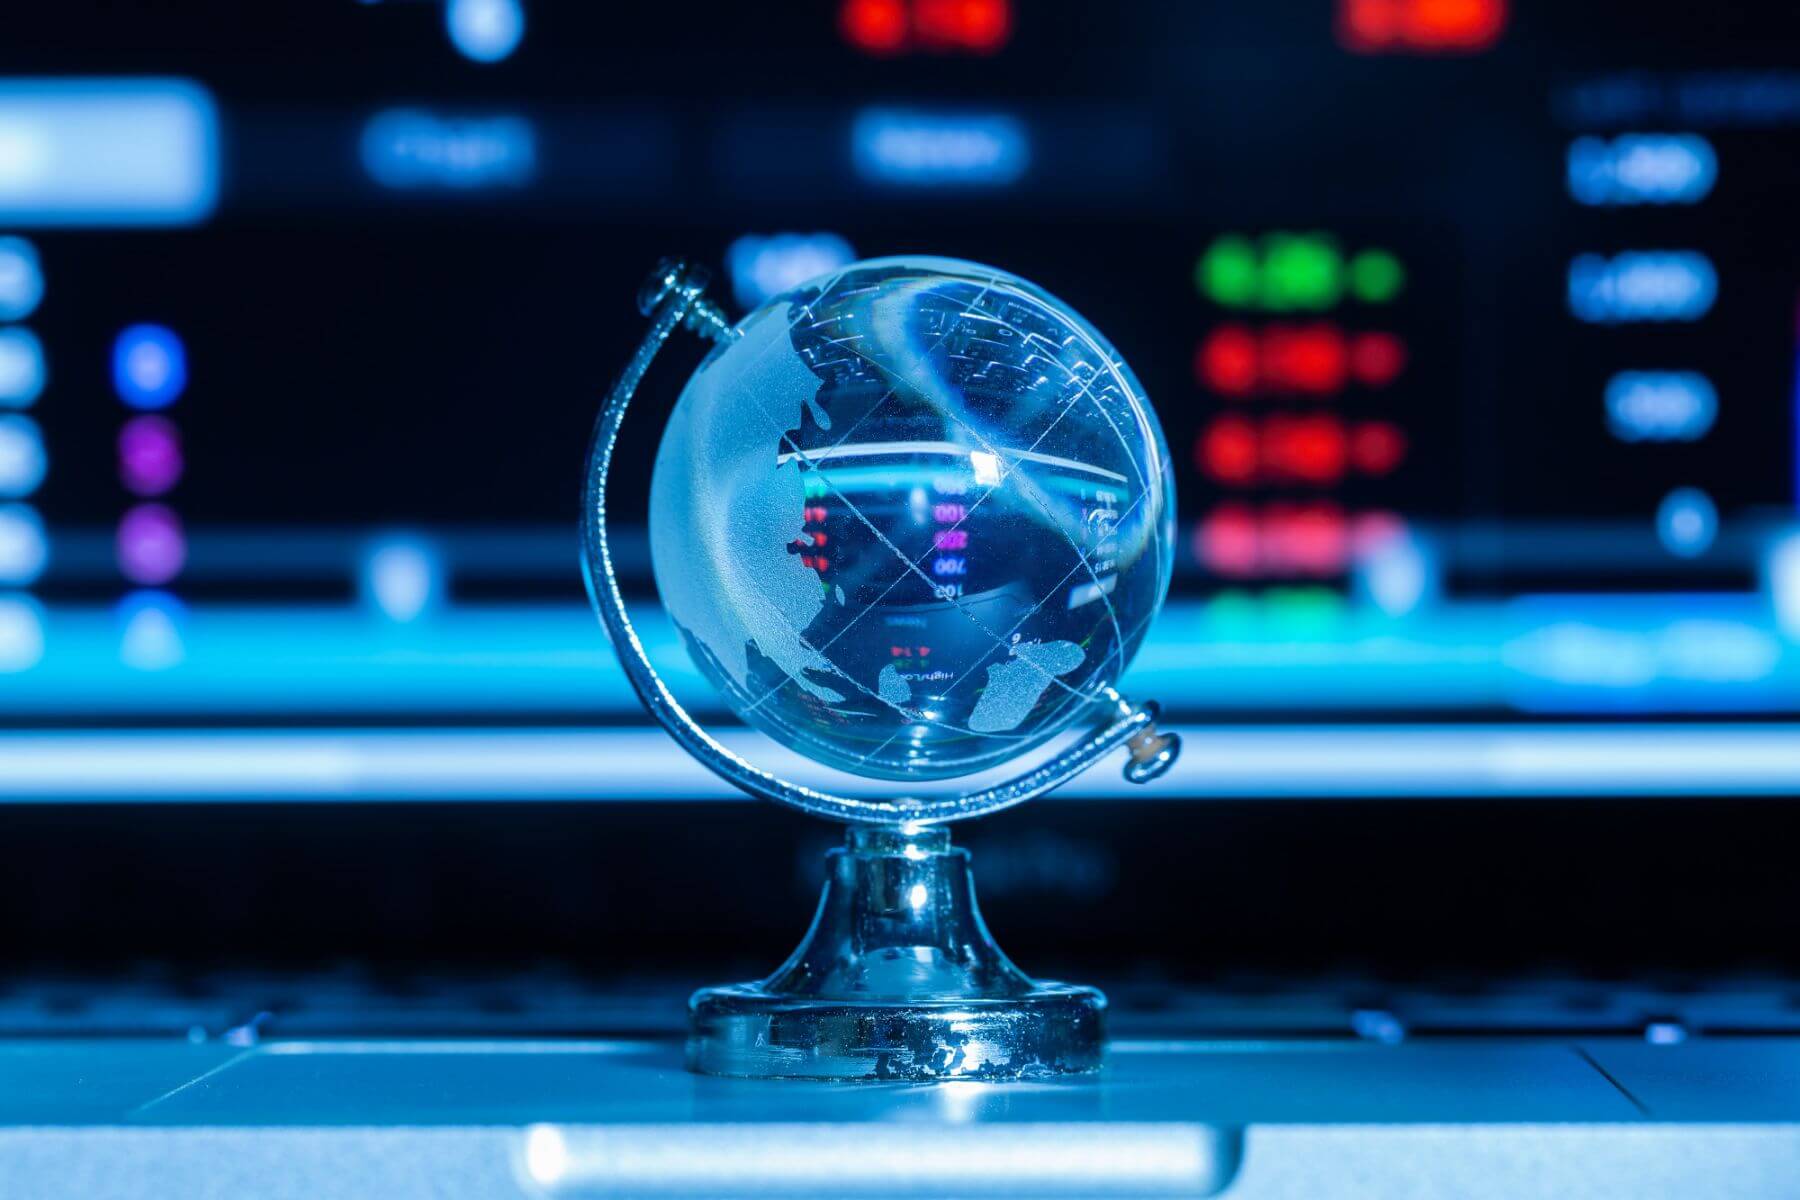 kryształowy globus na tle monitora z wyświetlonymi danymi